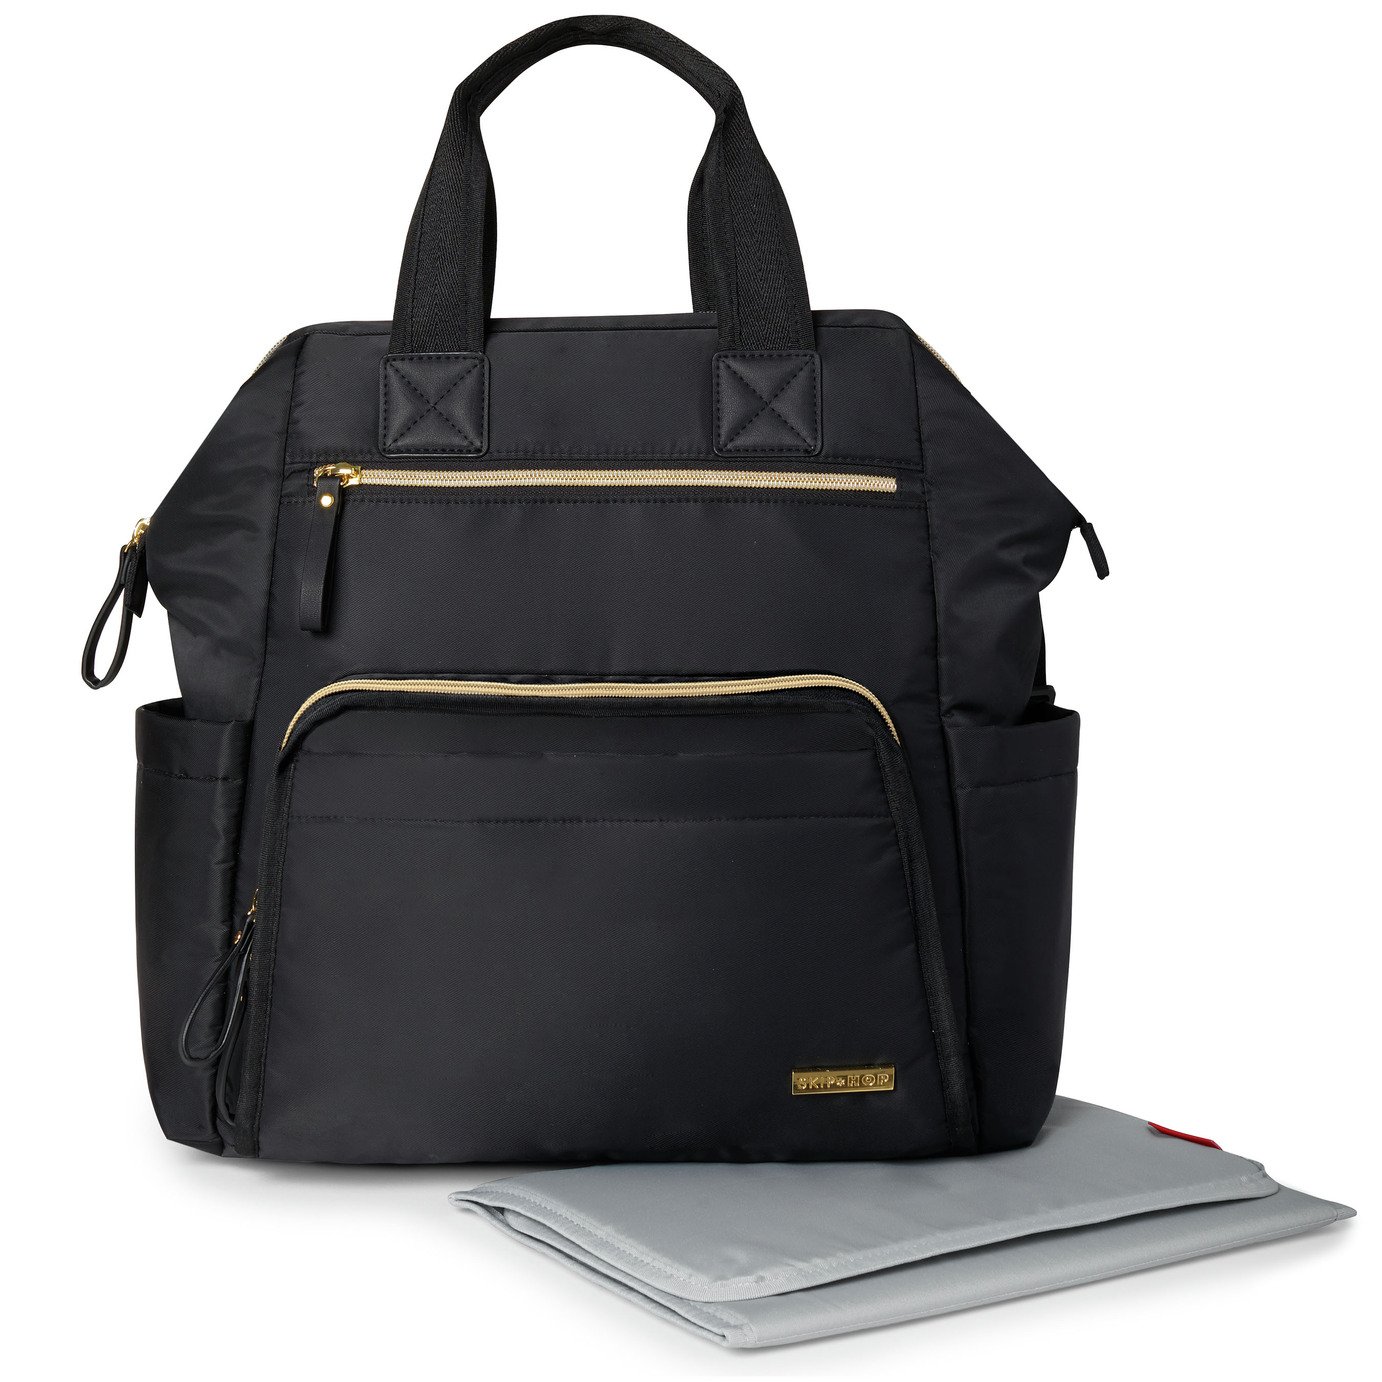 Skip Hop Main Frame Backpack Changing Bag Review